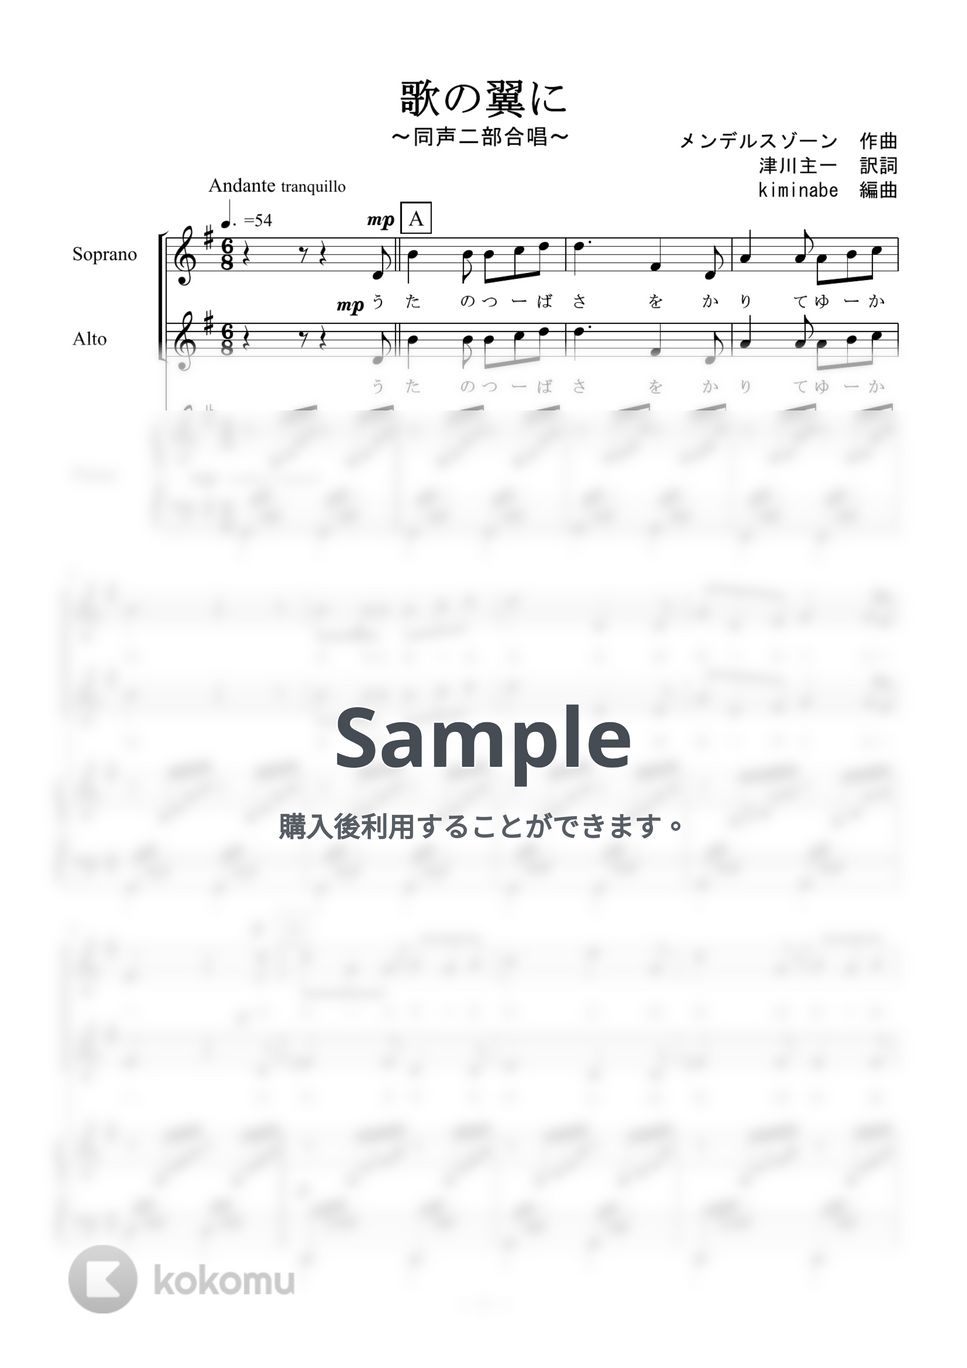 メンデルスゾーン - 歌の翼に (同声二部合唱) by kiminabe